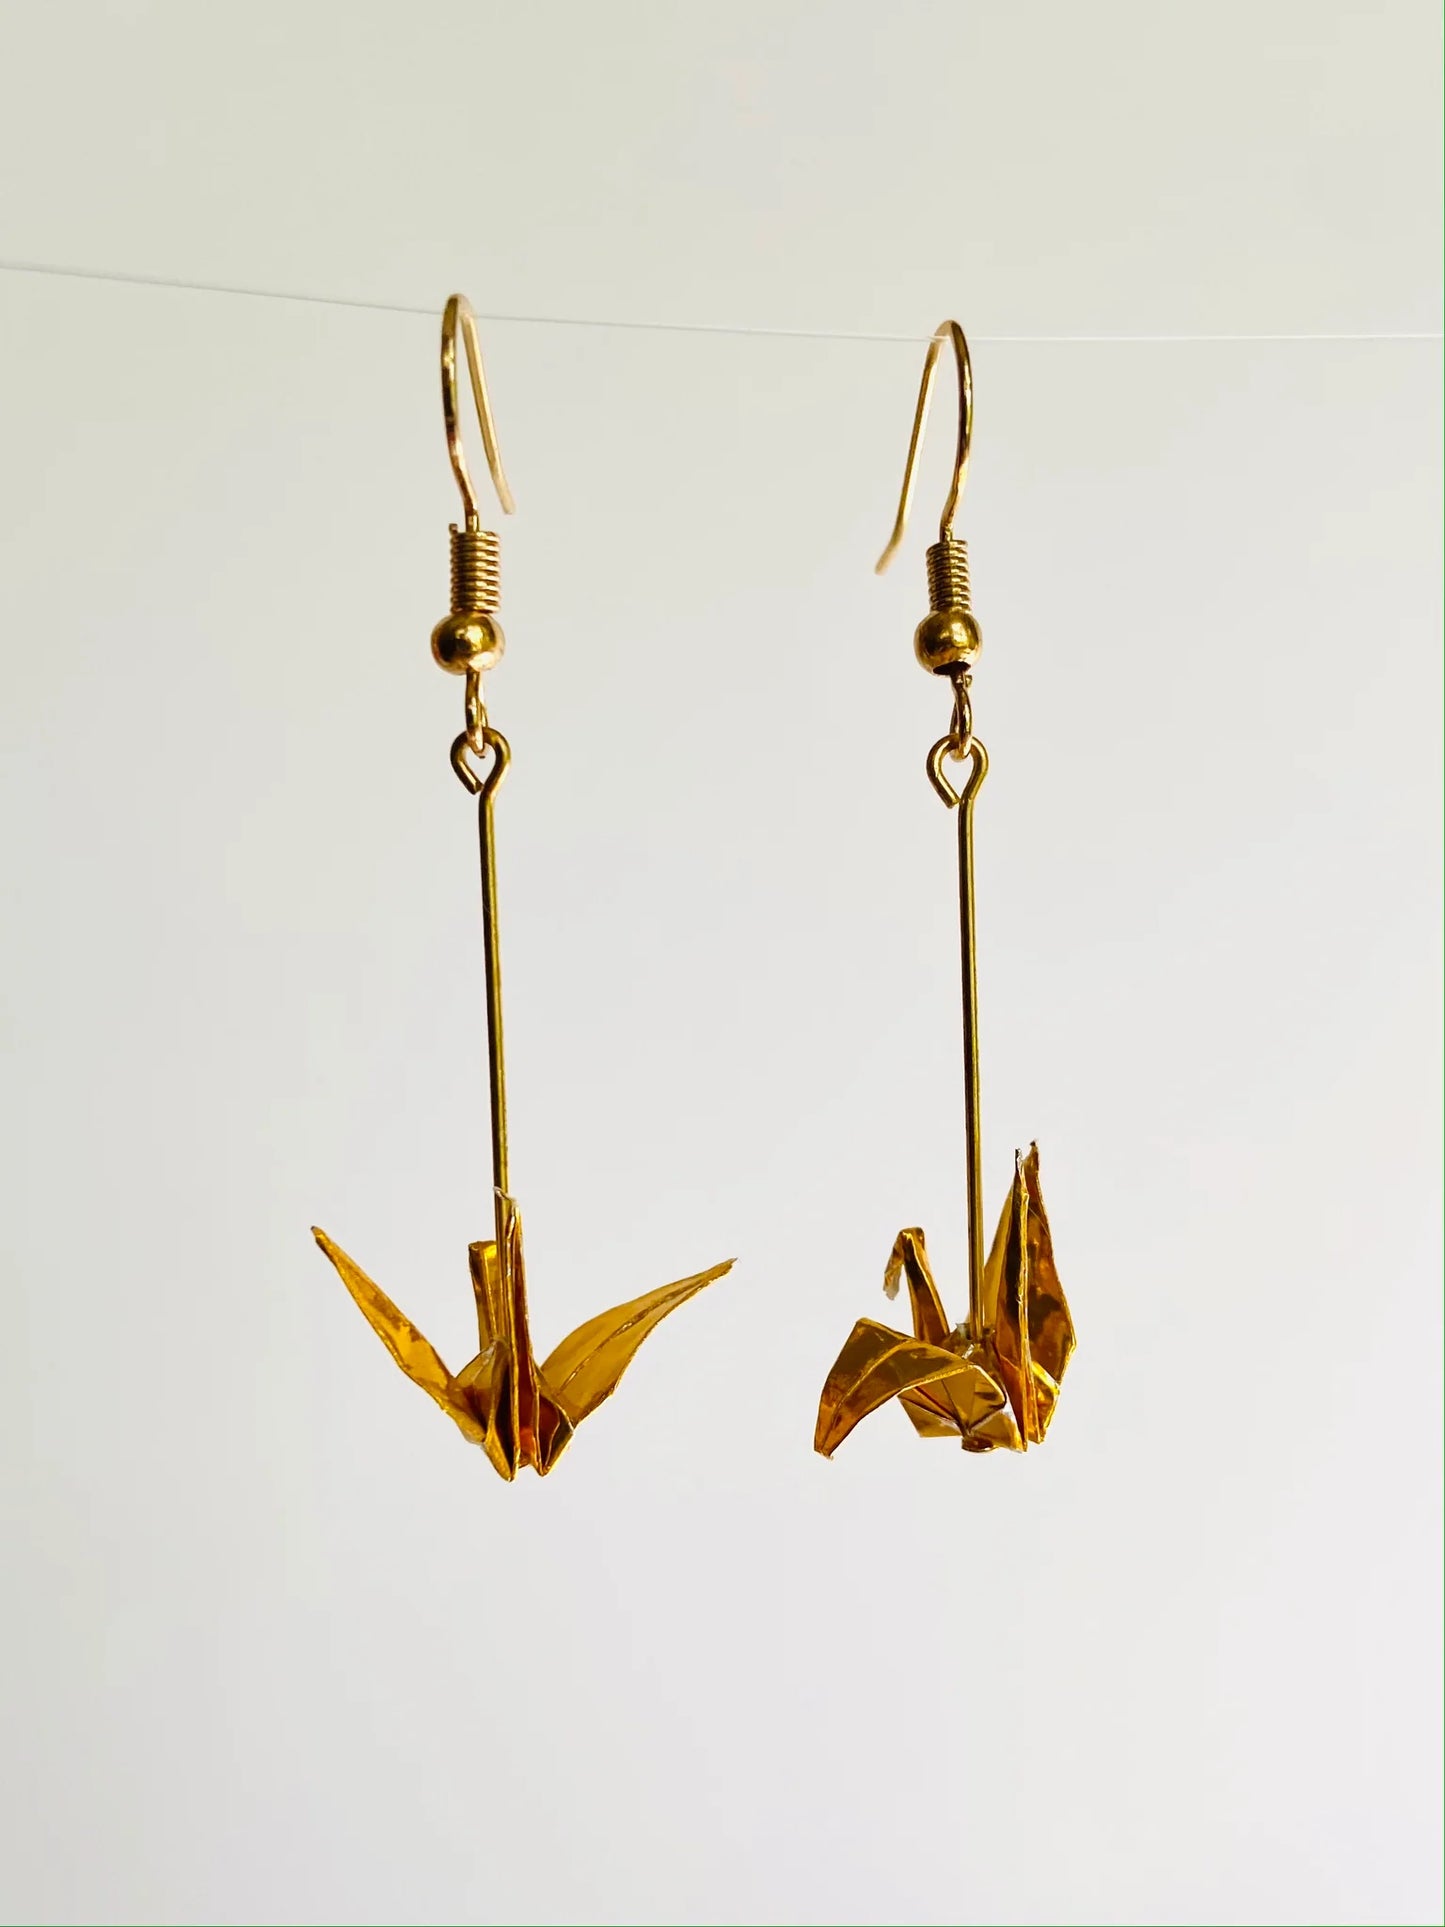 Origami Crane Earrings by Maya Joy in the World